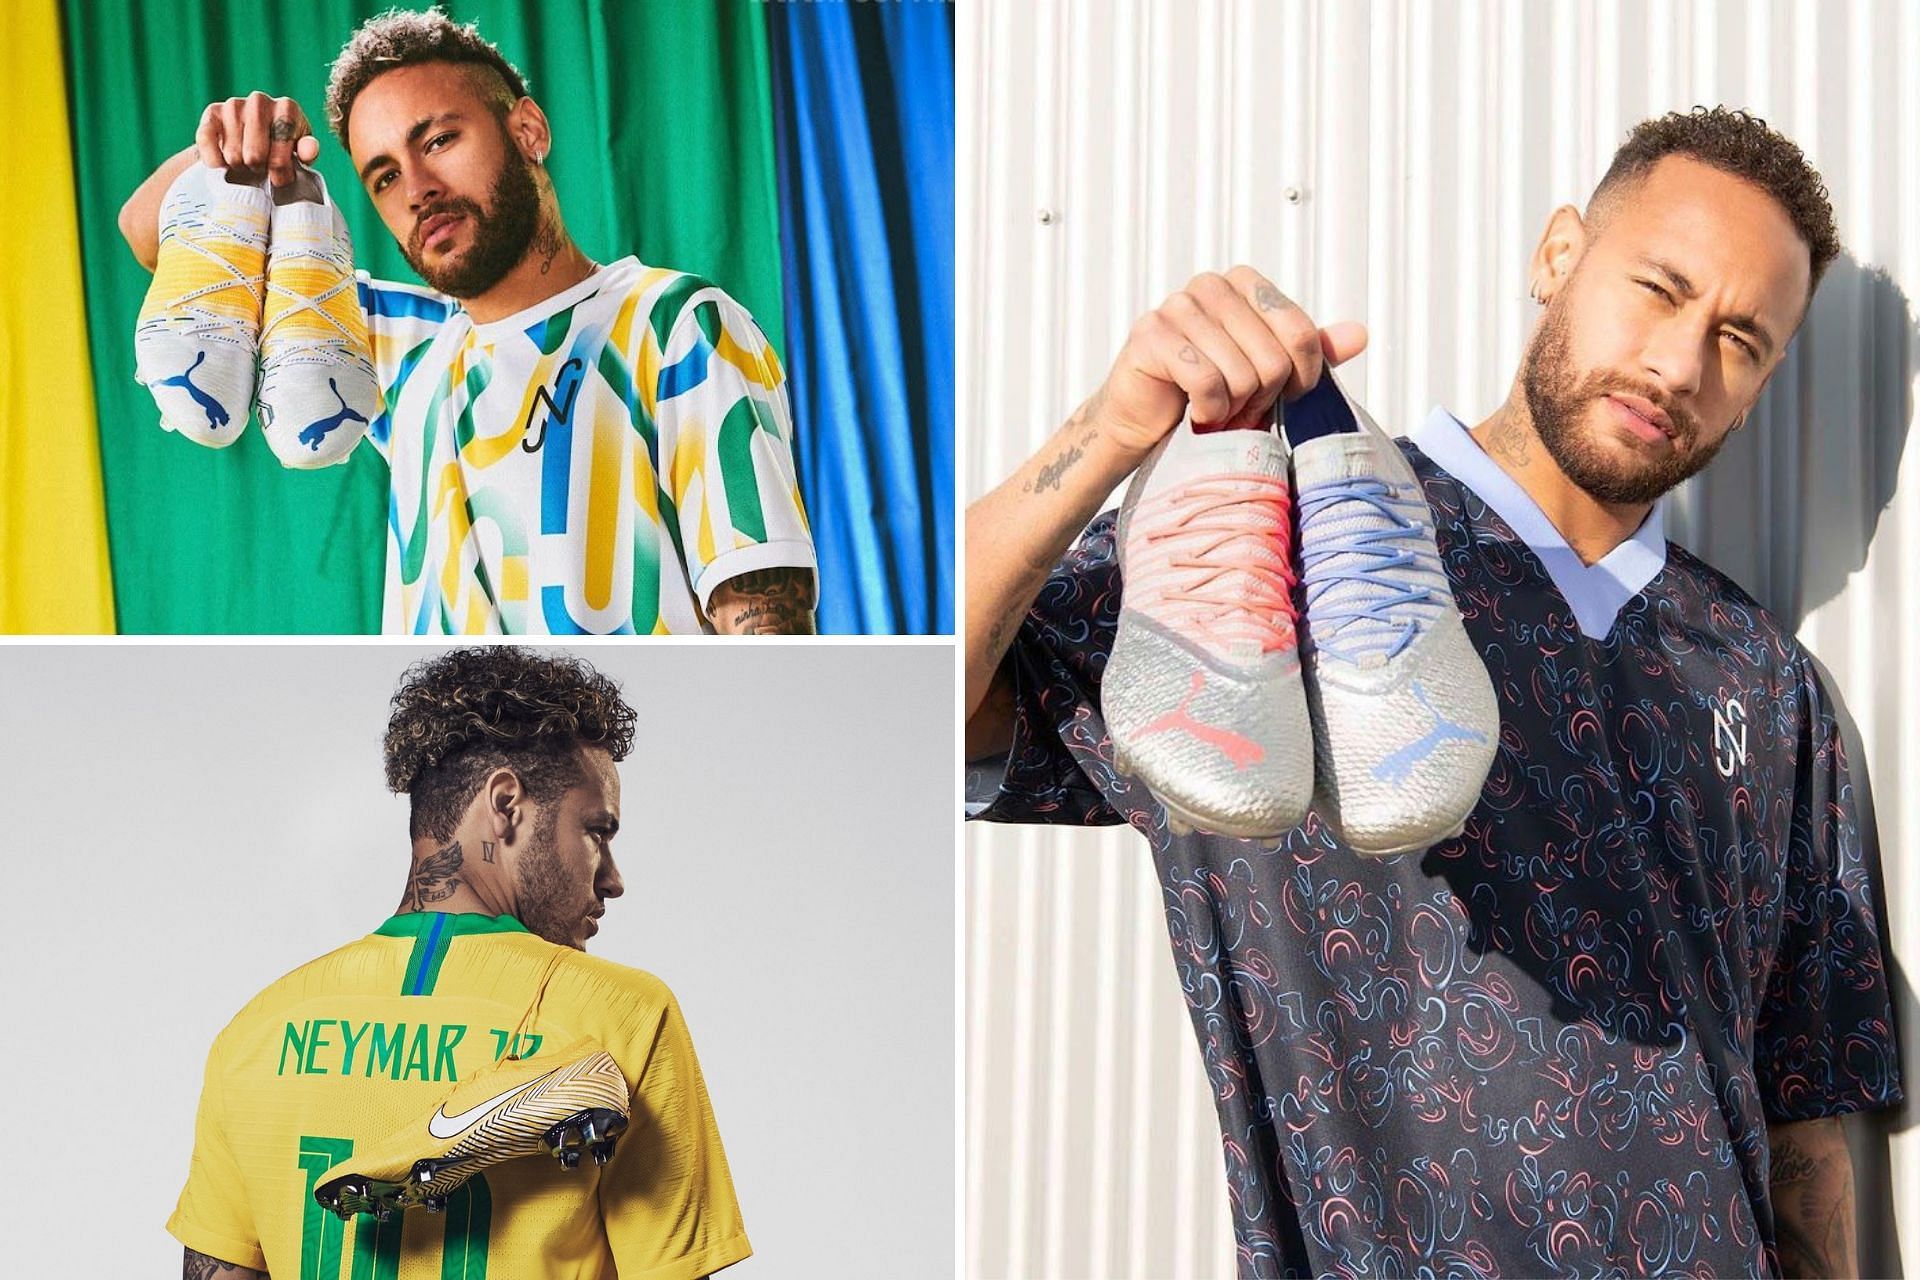 Top five football shoes worn by Neymar Jr. over the years (Image via Sportskeeda)